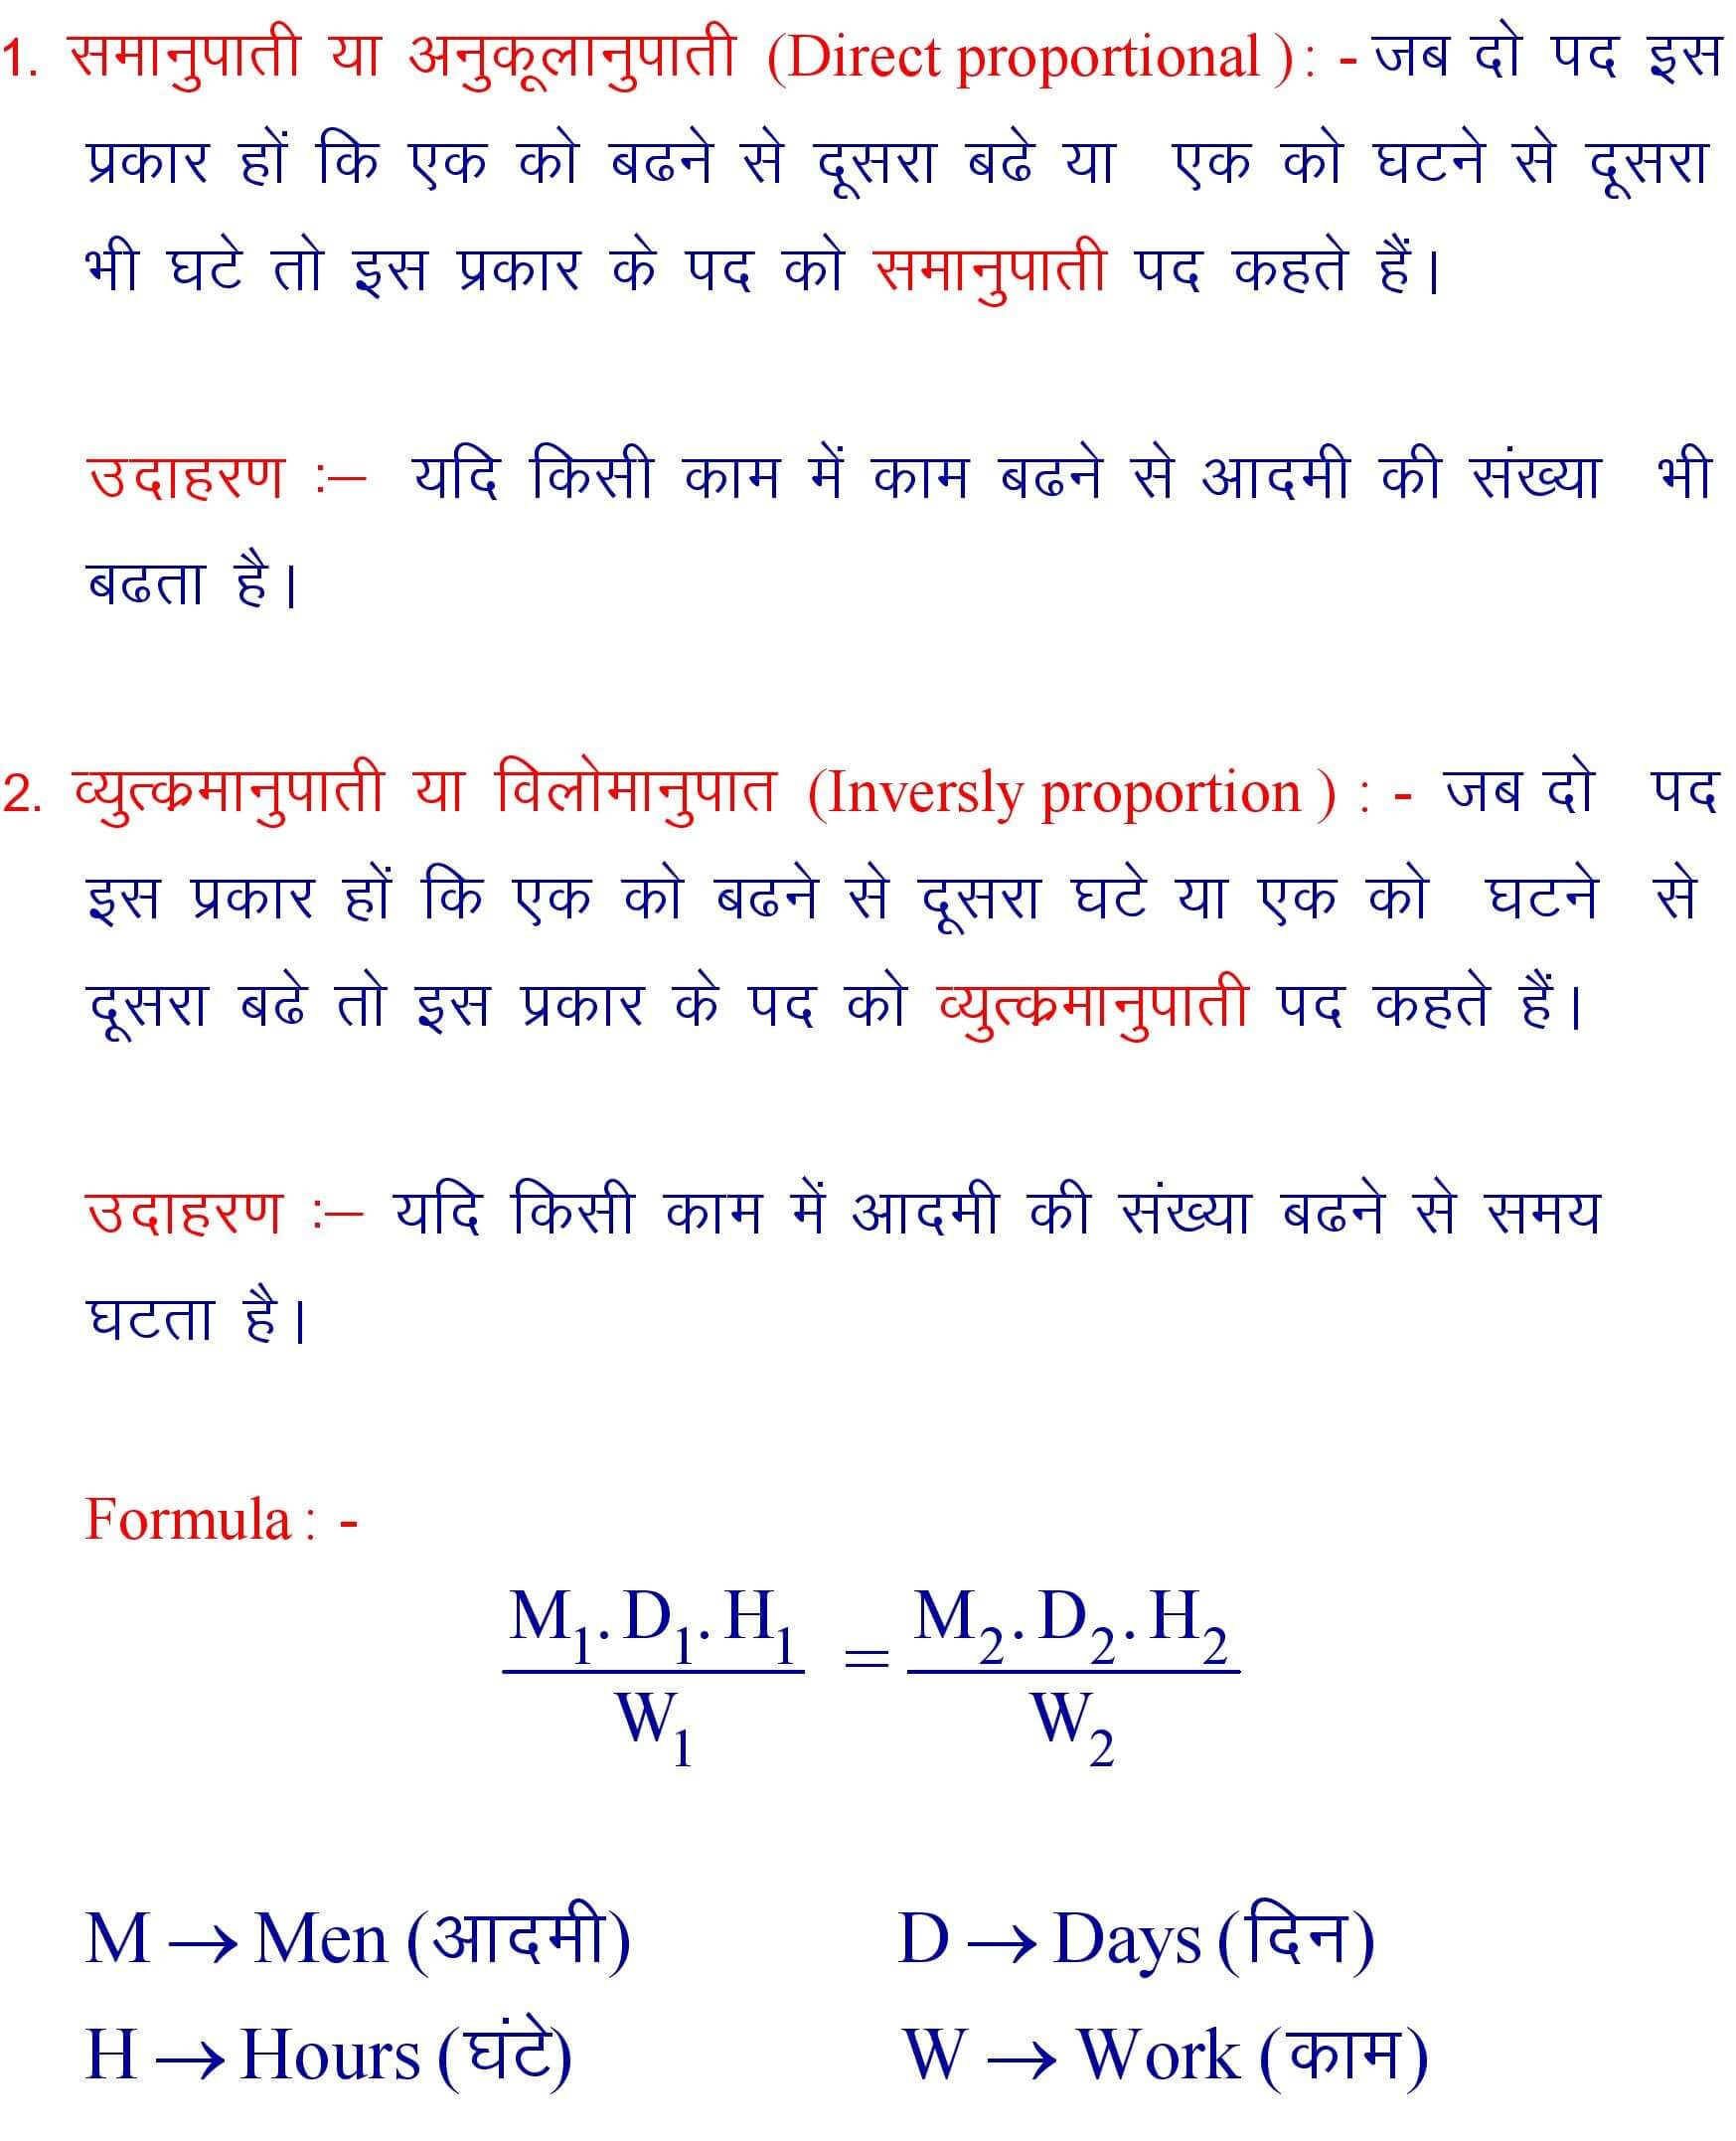 Mixed Proportion Formula in Hindi